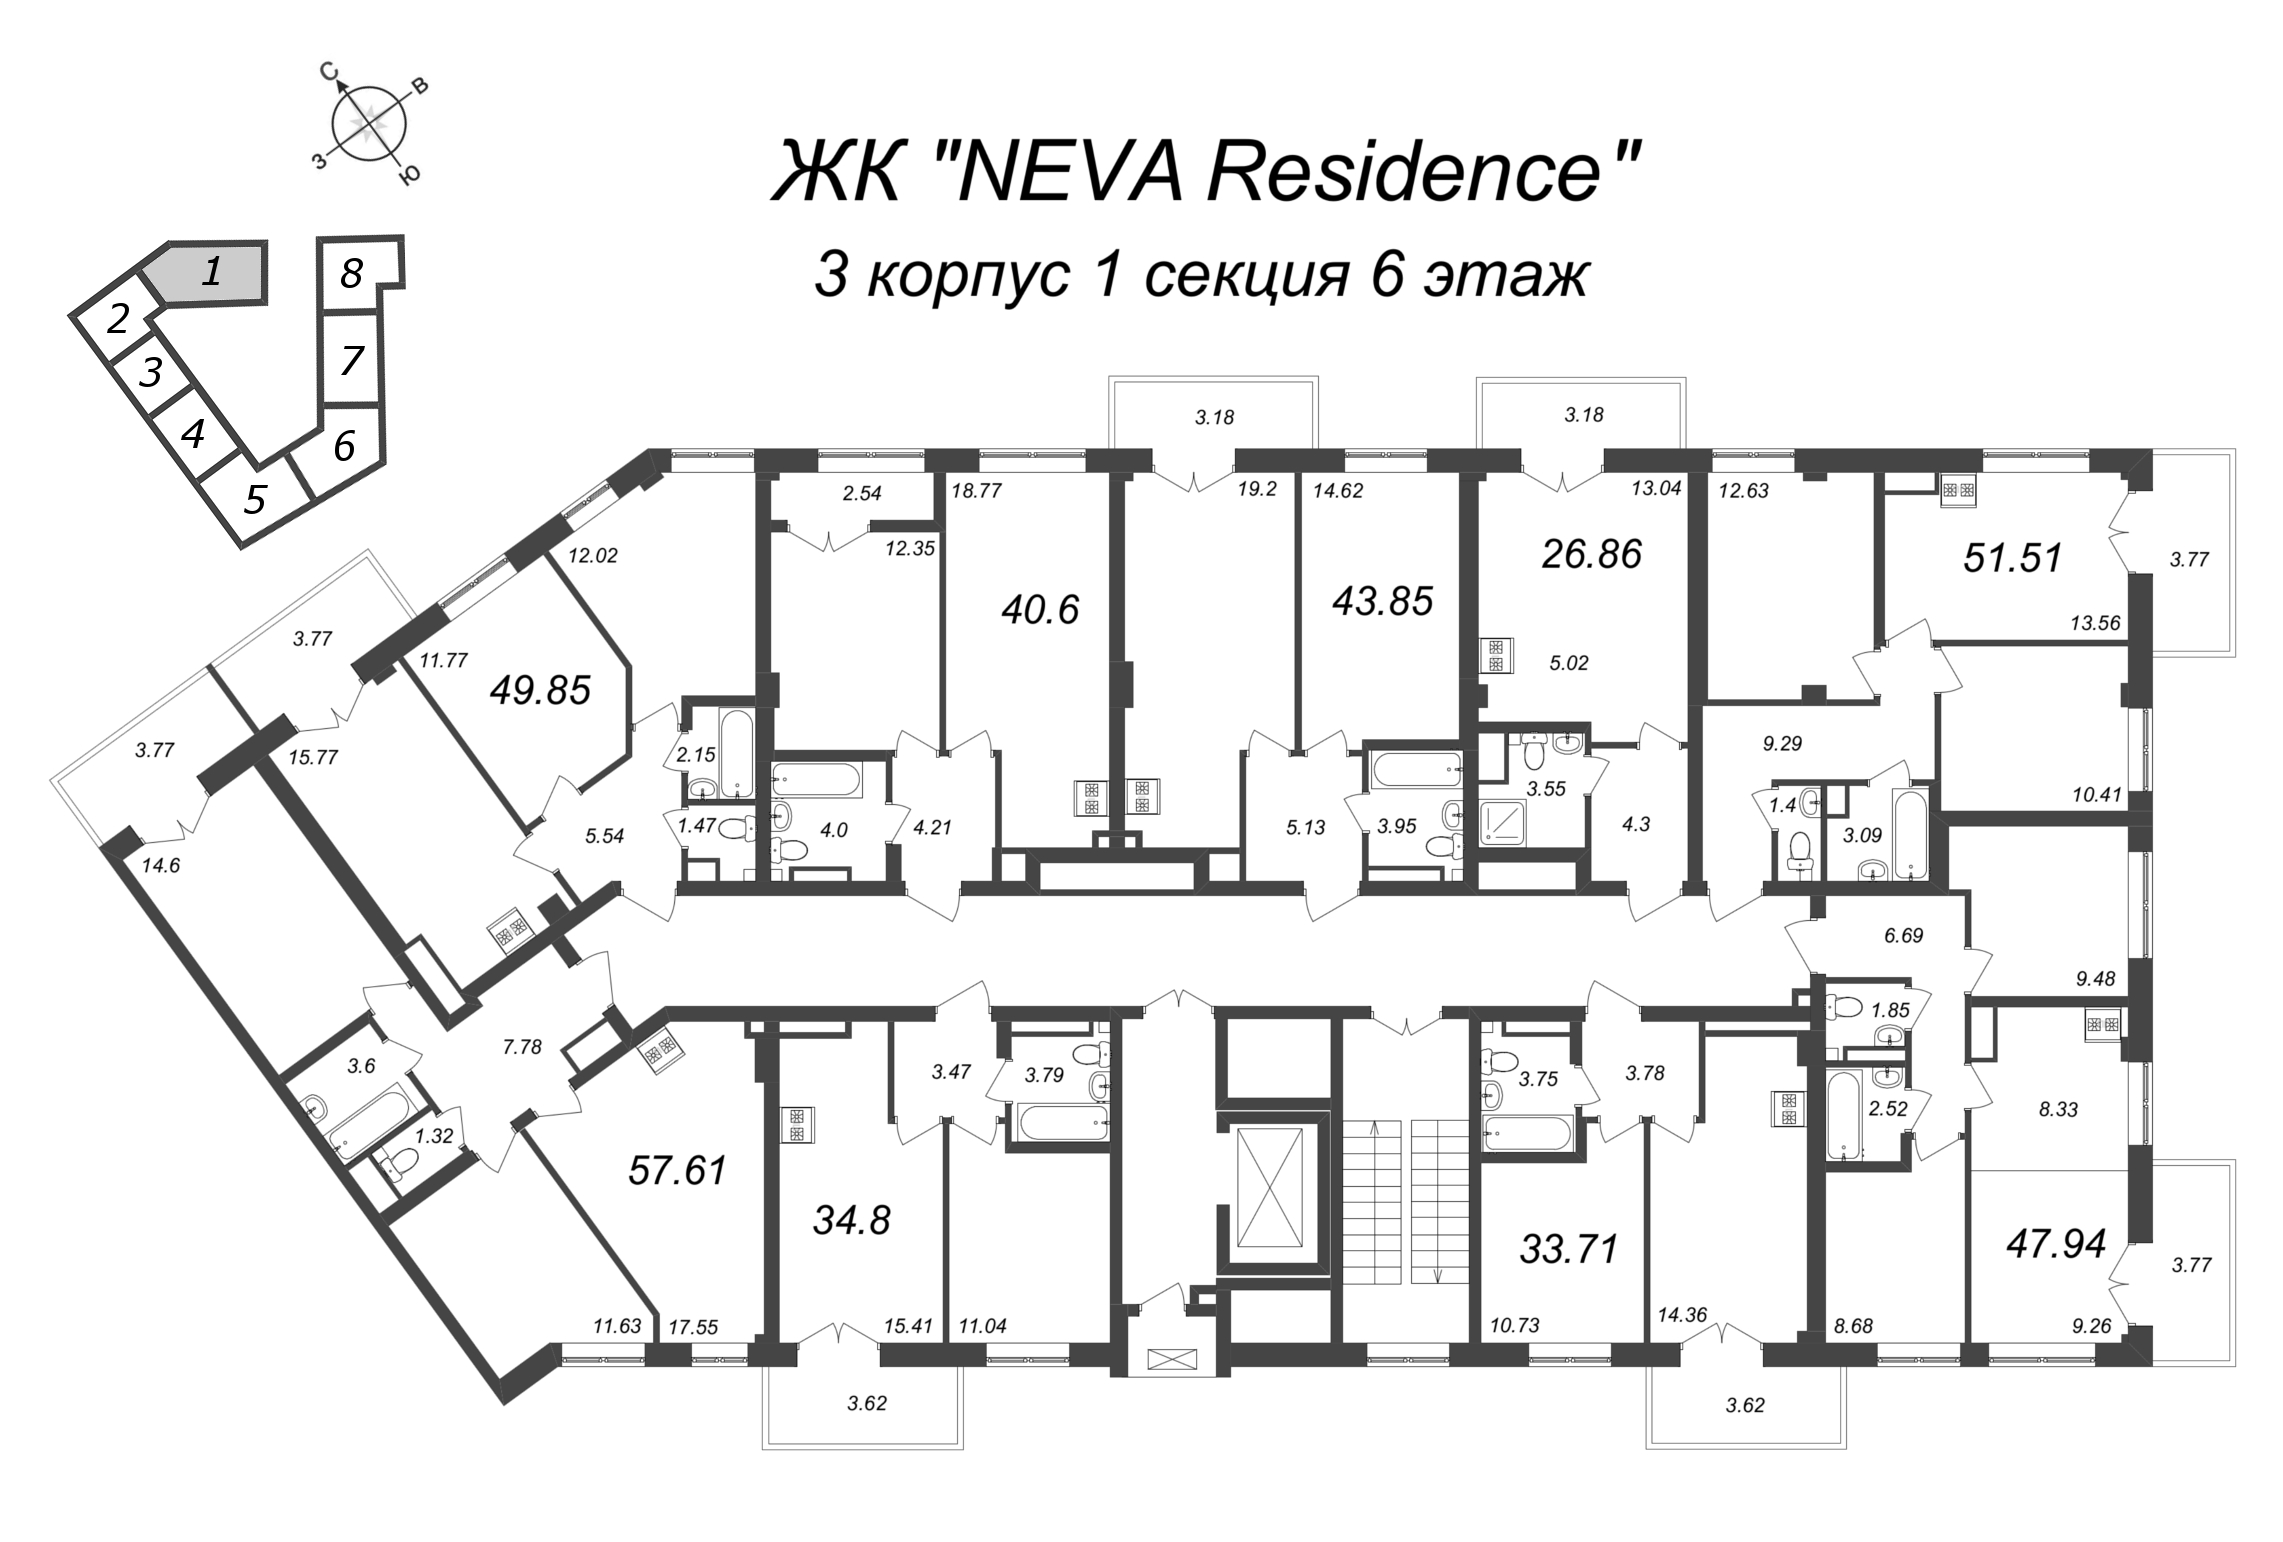 2-комнатная (Евро) квартира, 34.8 м² в ЖК "Neva Residence" - планировка этажа